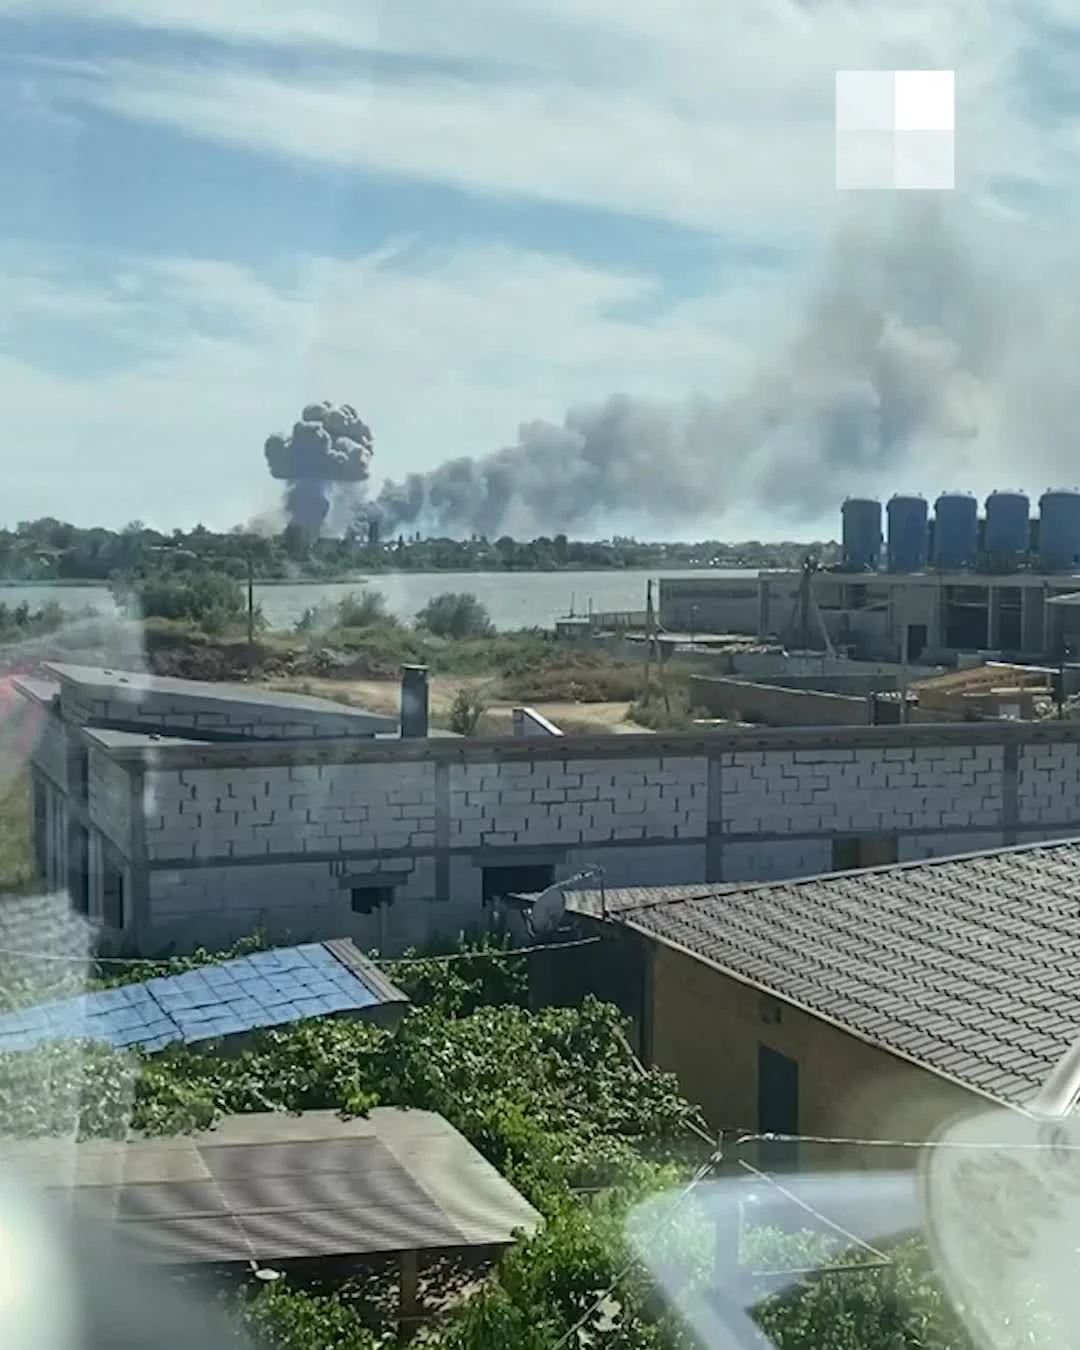 Севастополь новости сейчас взрывы что происходит. Взрывы в Севастополе сейчас. Клубы дыма от взрыва. Взорвали аэродром в Севастополе. Российскую авиабазу Саки.